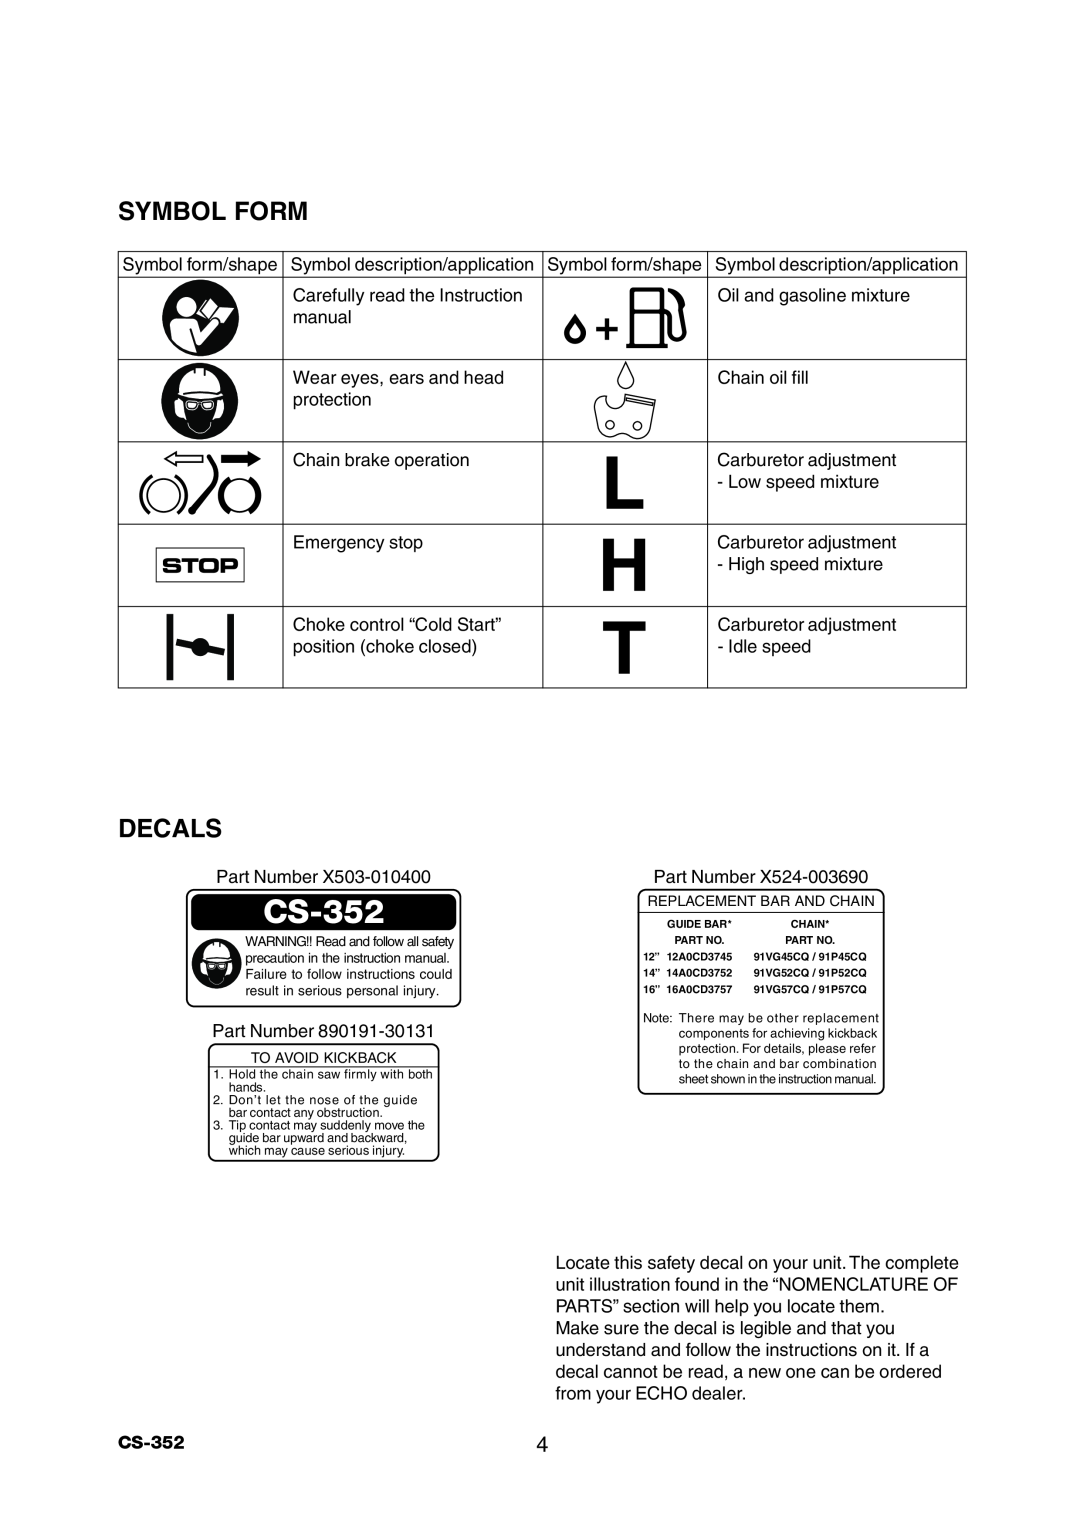 Echo CS-352 instruction manual Symbol Form, Decals, Stop 